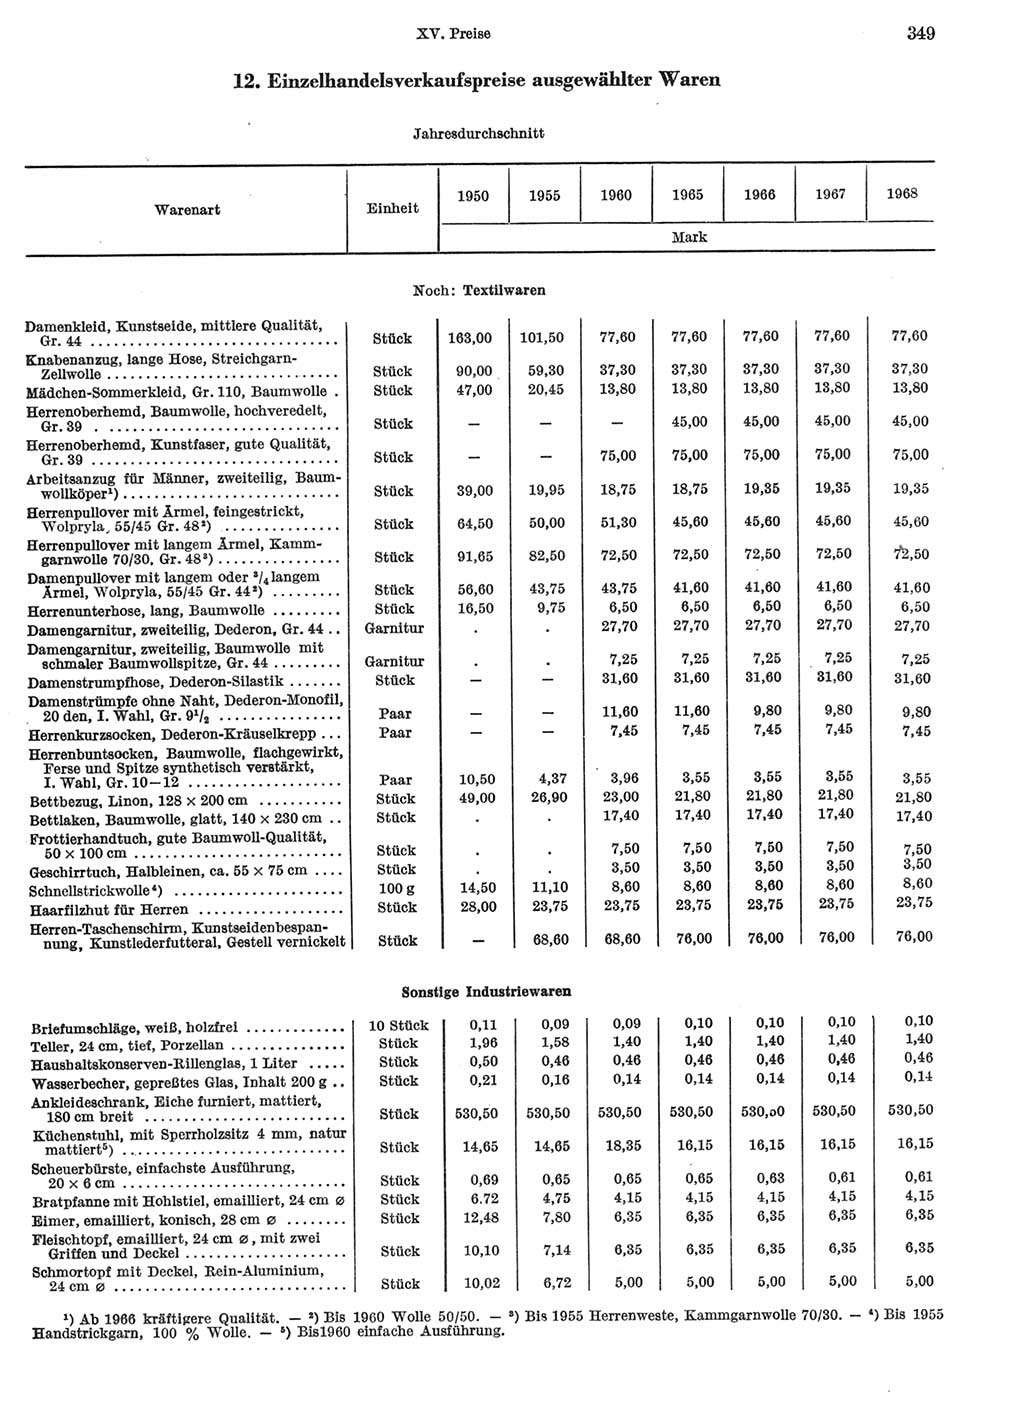 Statistisches Jahrbuch der Deutschen Demokratischen Republik (DDR) 1969, Seite 349 (Stat. Jb. DDR 1969, S. 349)